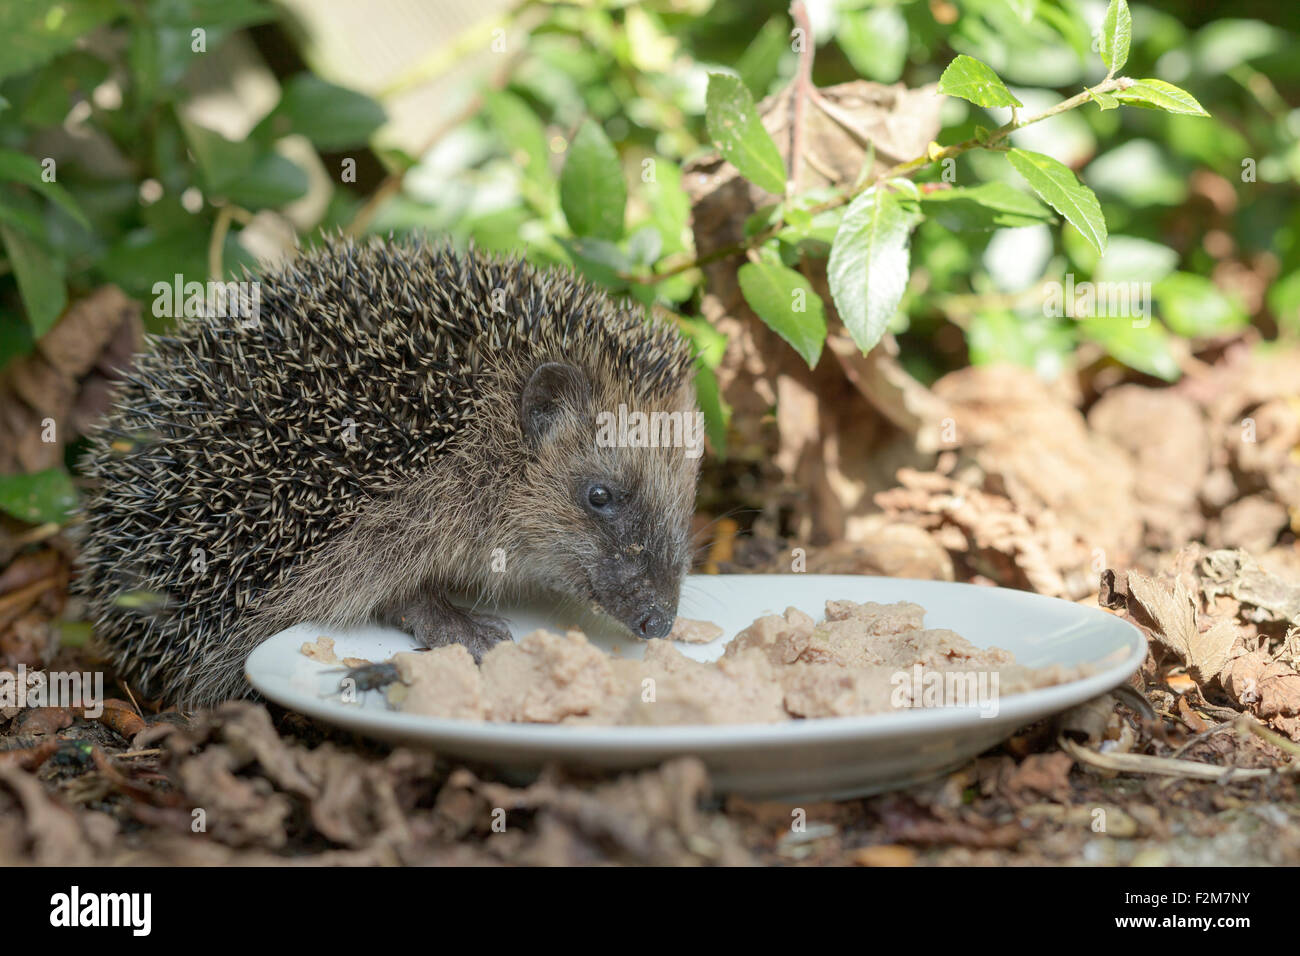 Riccio di mangiare alimenti per gatti off una piastra in un giardino Foto Stock